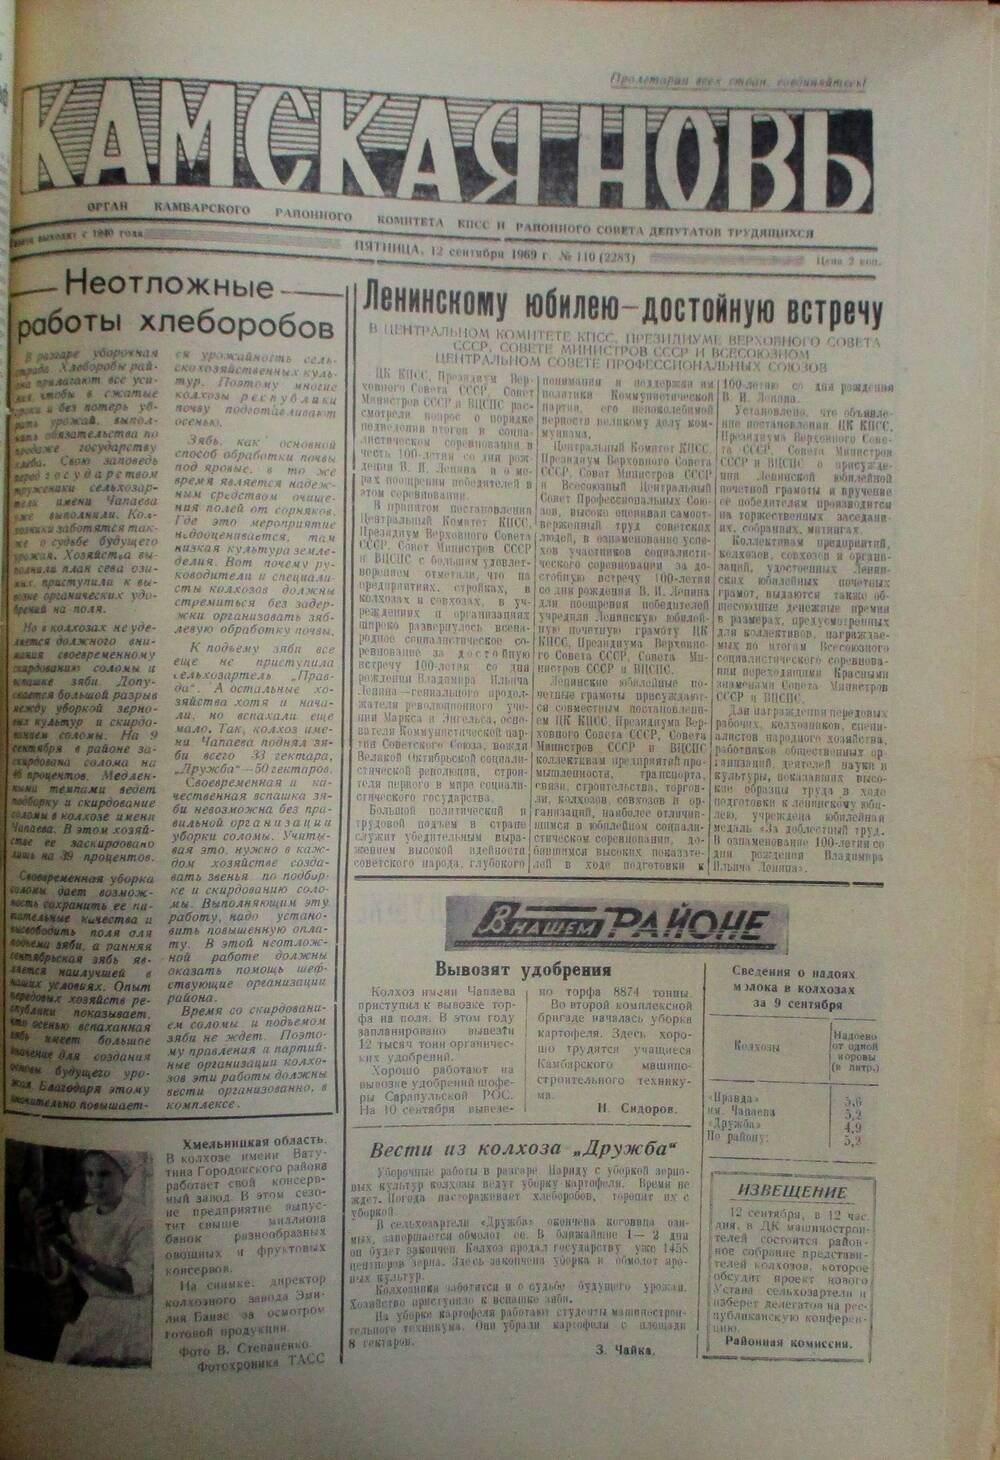 Газеты Камская новь за 1969 год, орган Камбарского райсовета и  РККПСС, с №1 по №66, с №68 по №156. №110.